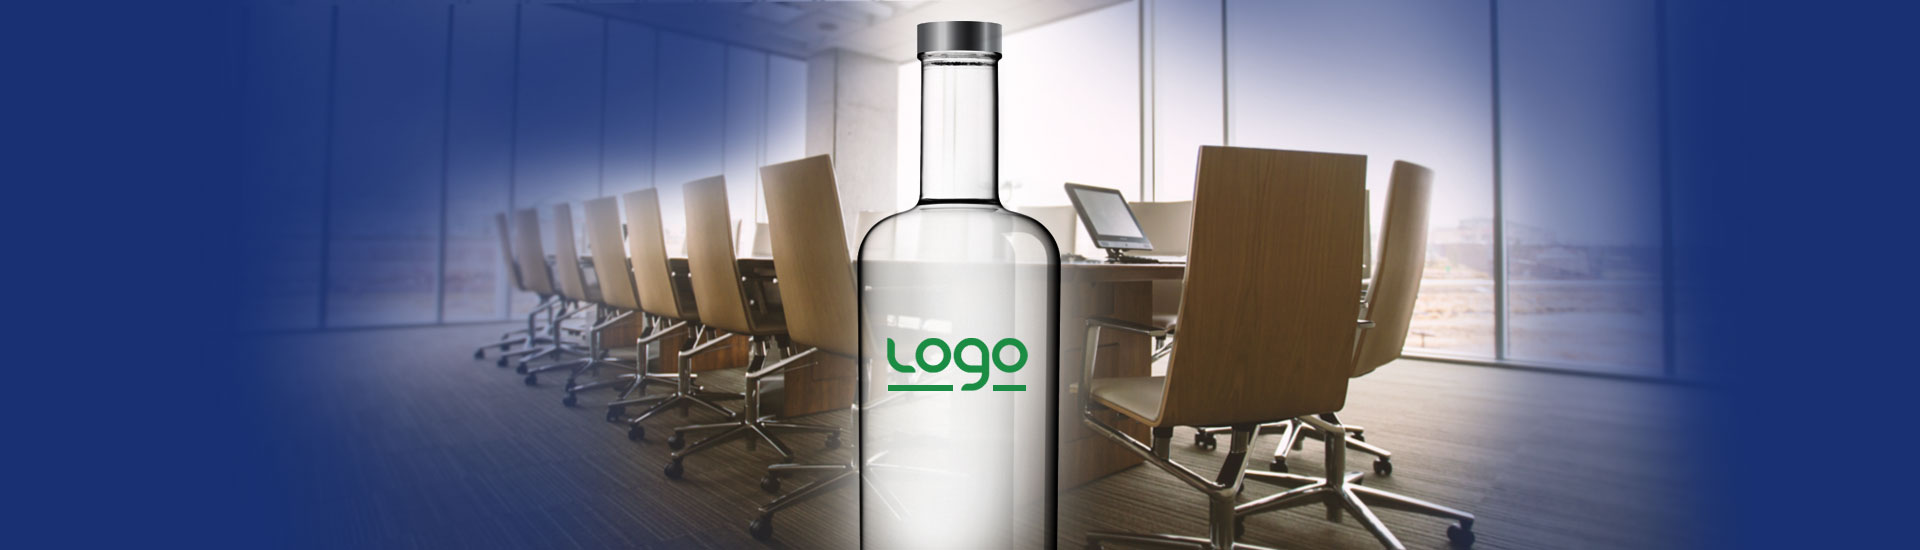 garrafas personalizadas para empresas - banner 2